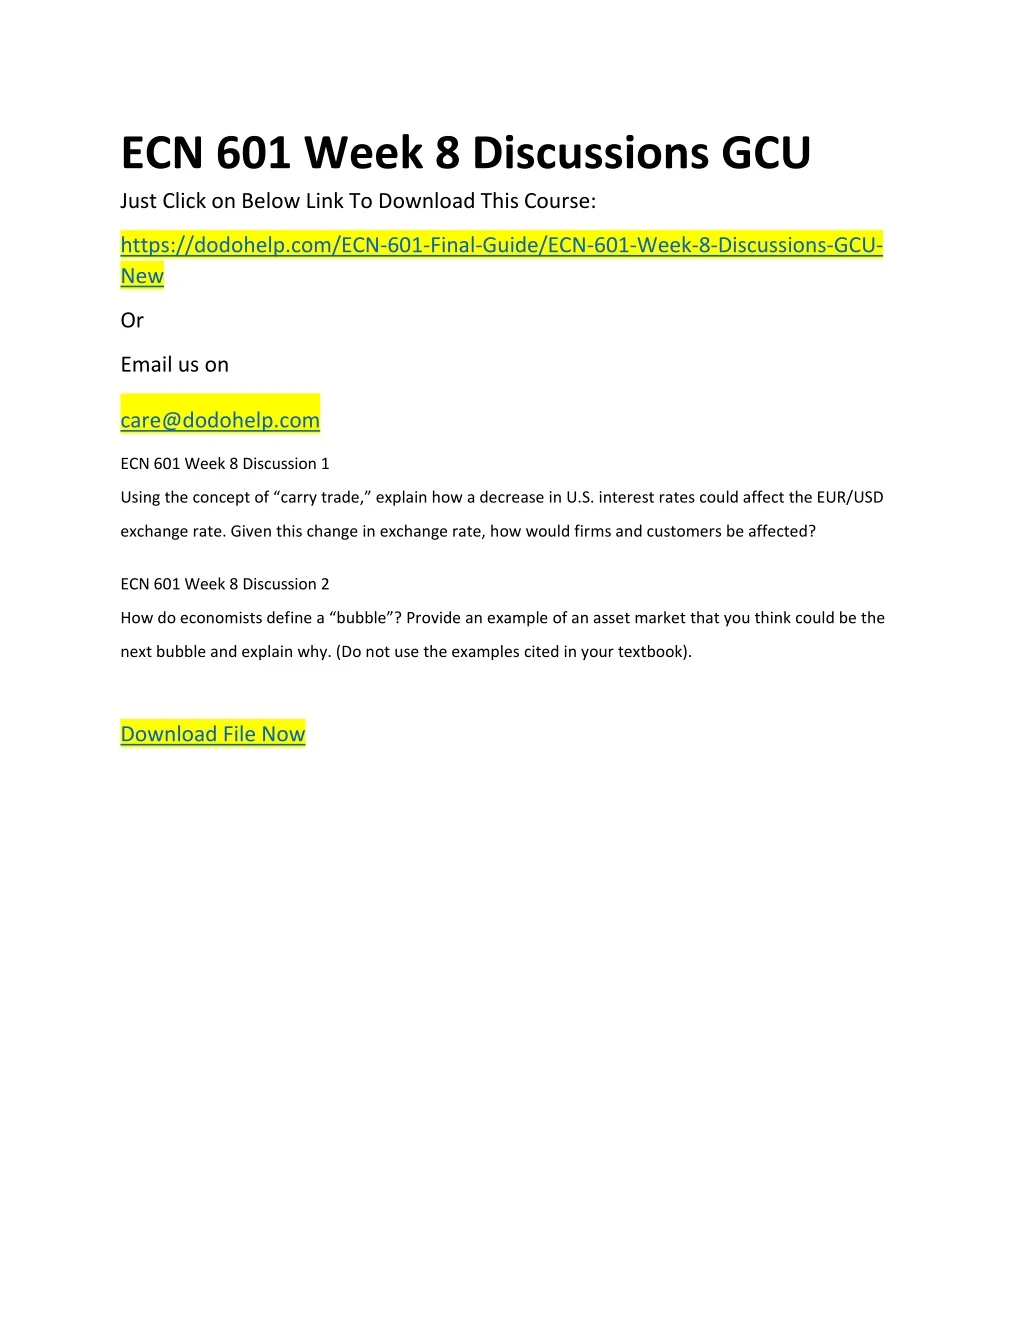 ecn 601 week 8 discussions gcu just click